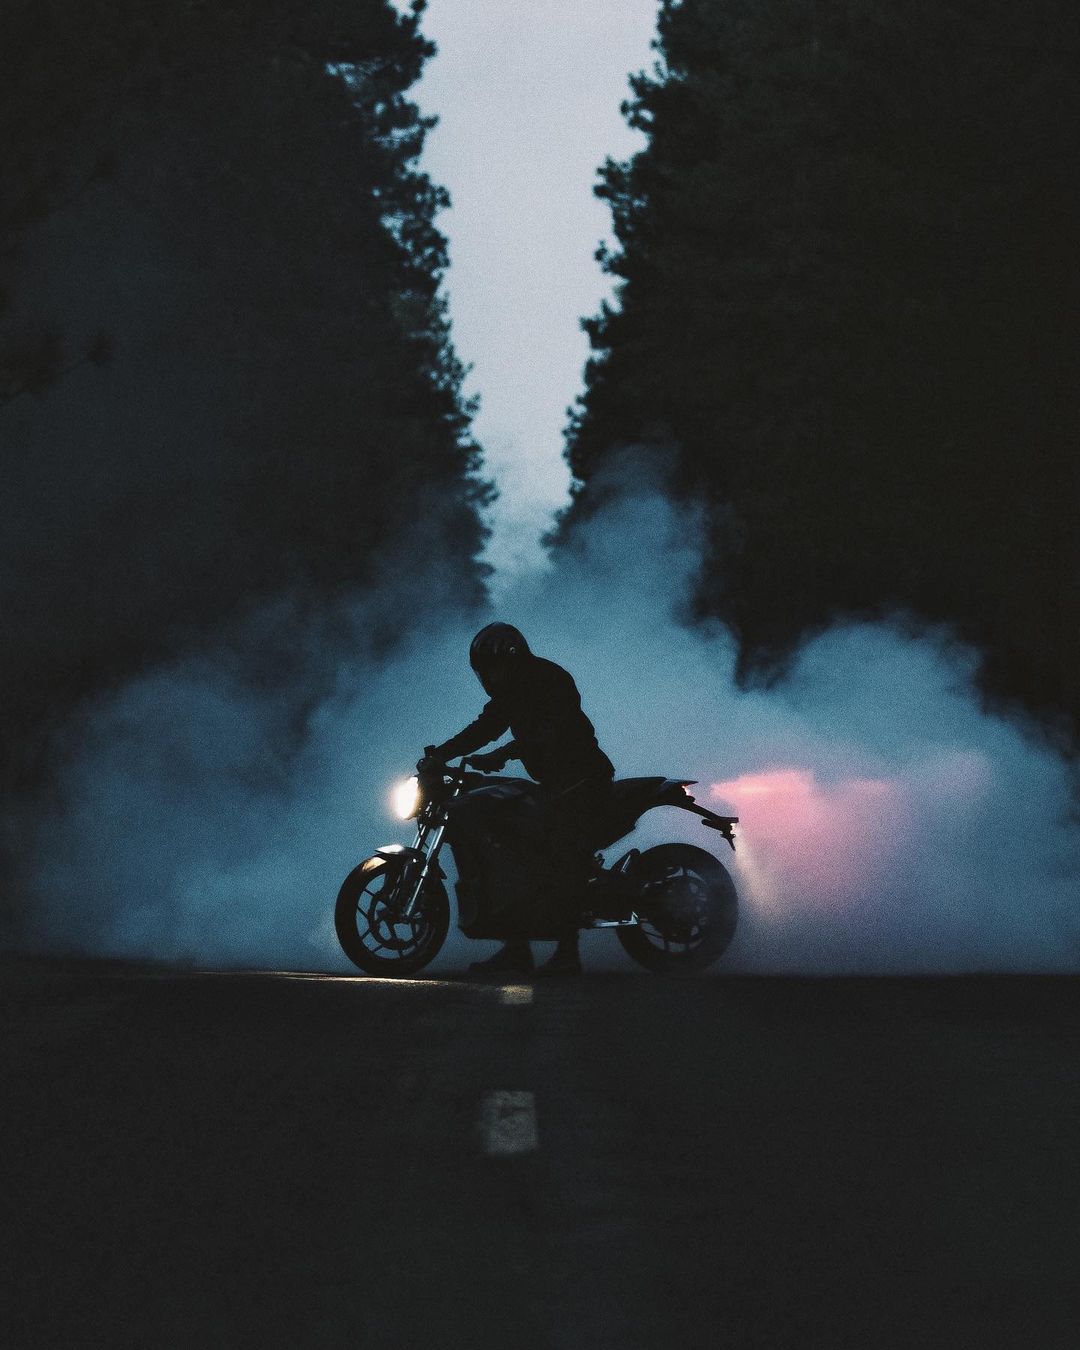 Динамичные снимки автомобилей и мотоциклов от Аарона Бримхолла